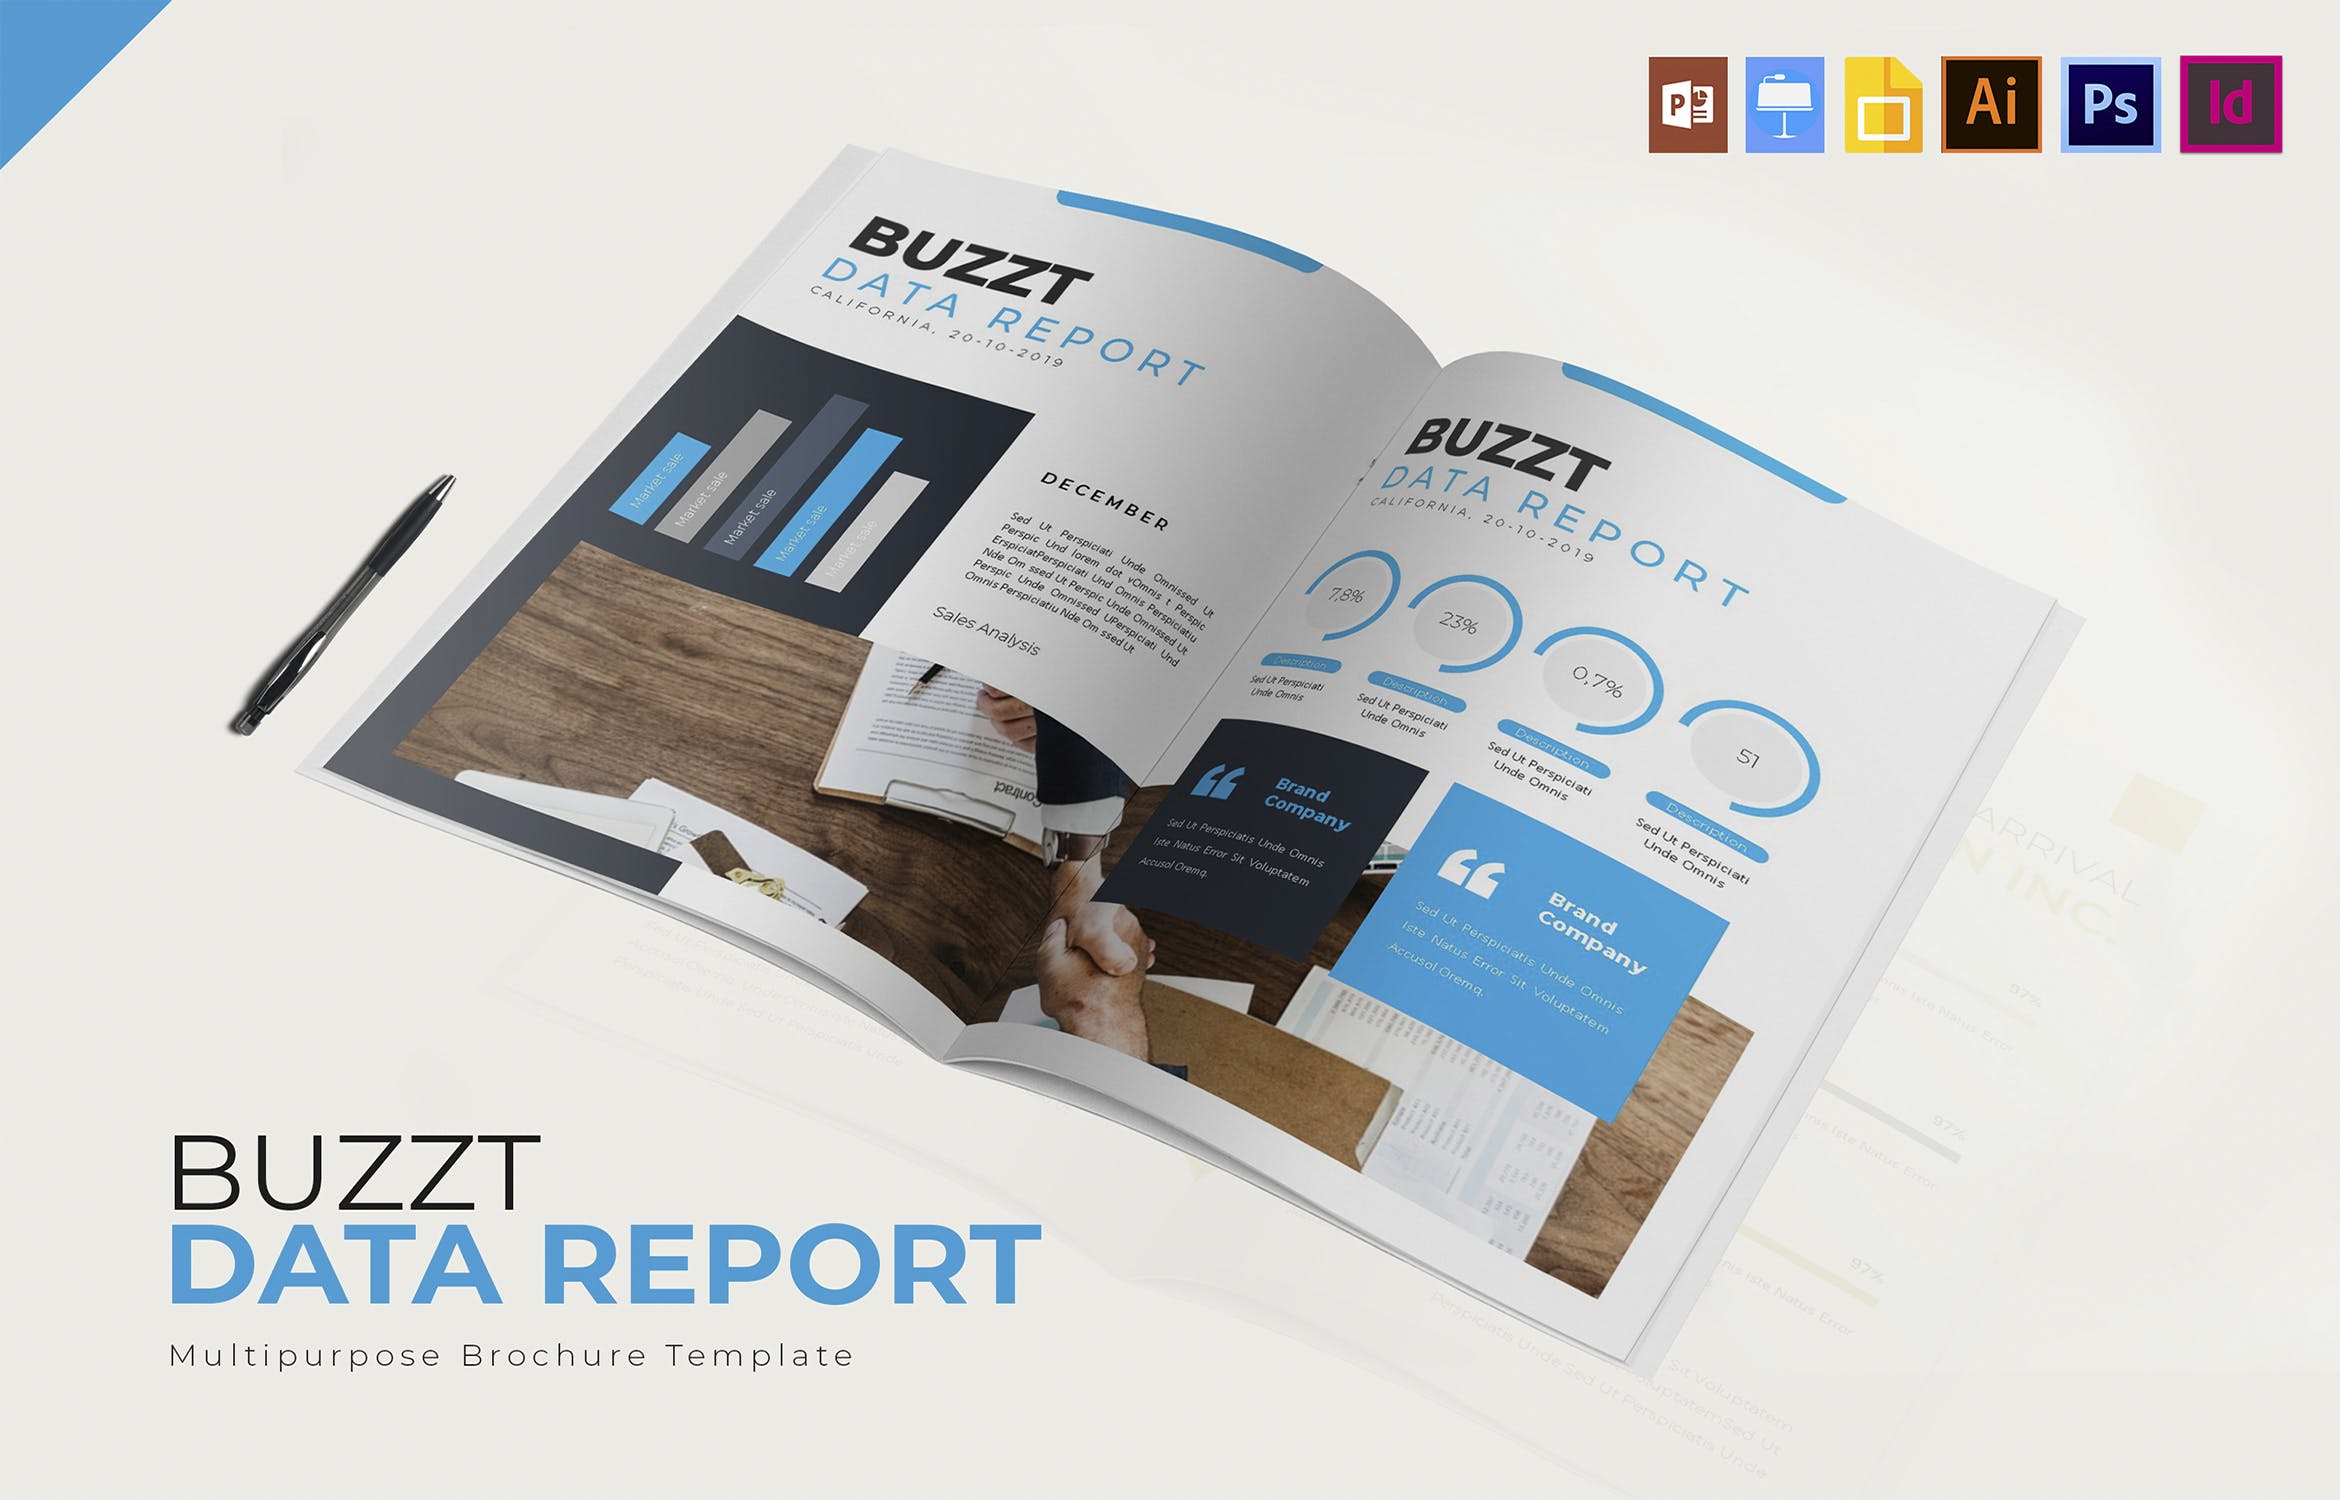 蓝色主题风格数据统计分析报告设计模板 Buzzt Data Report | Brochure Template插图(2)